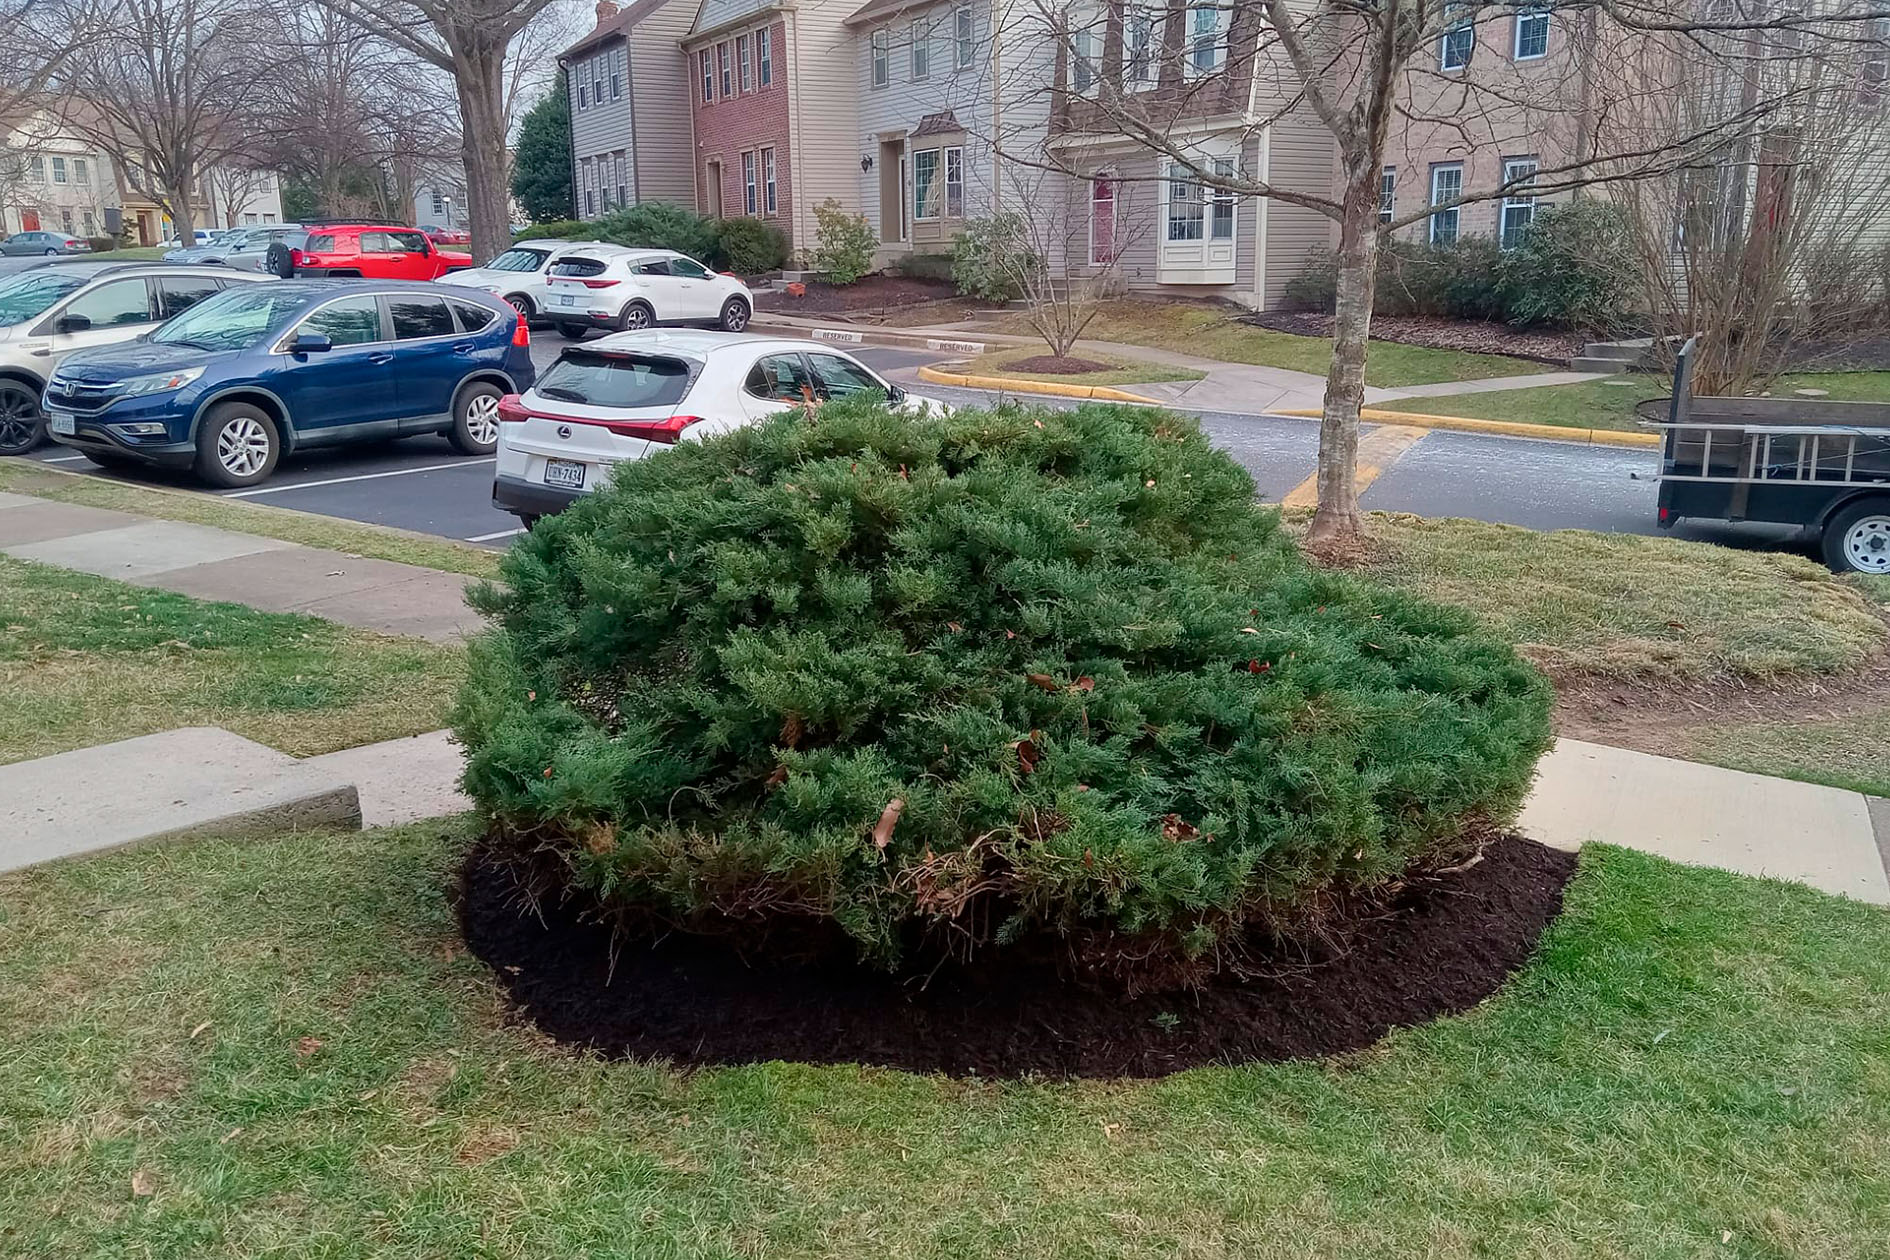 Stump in lawn in public park